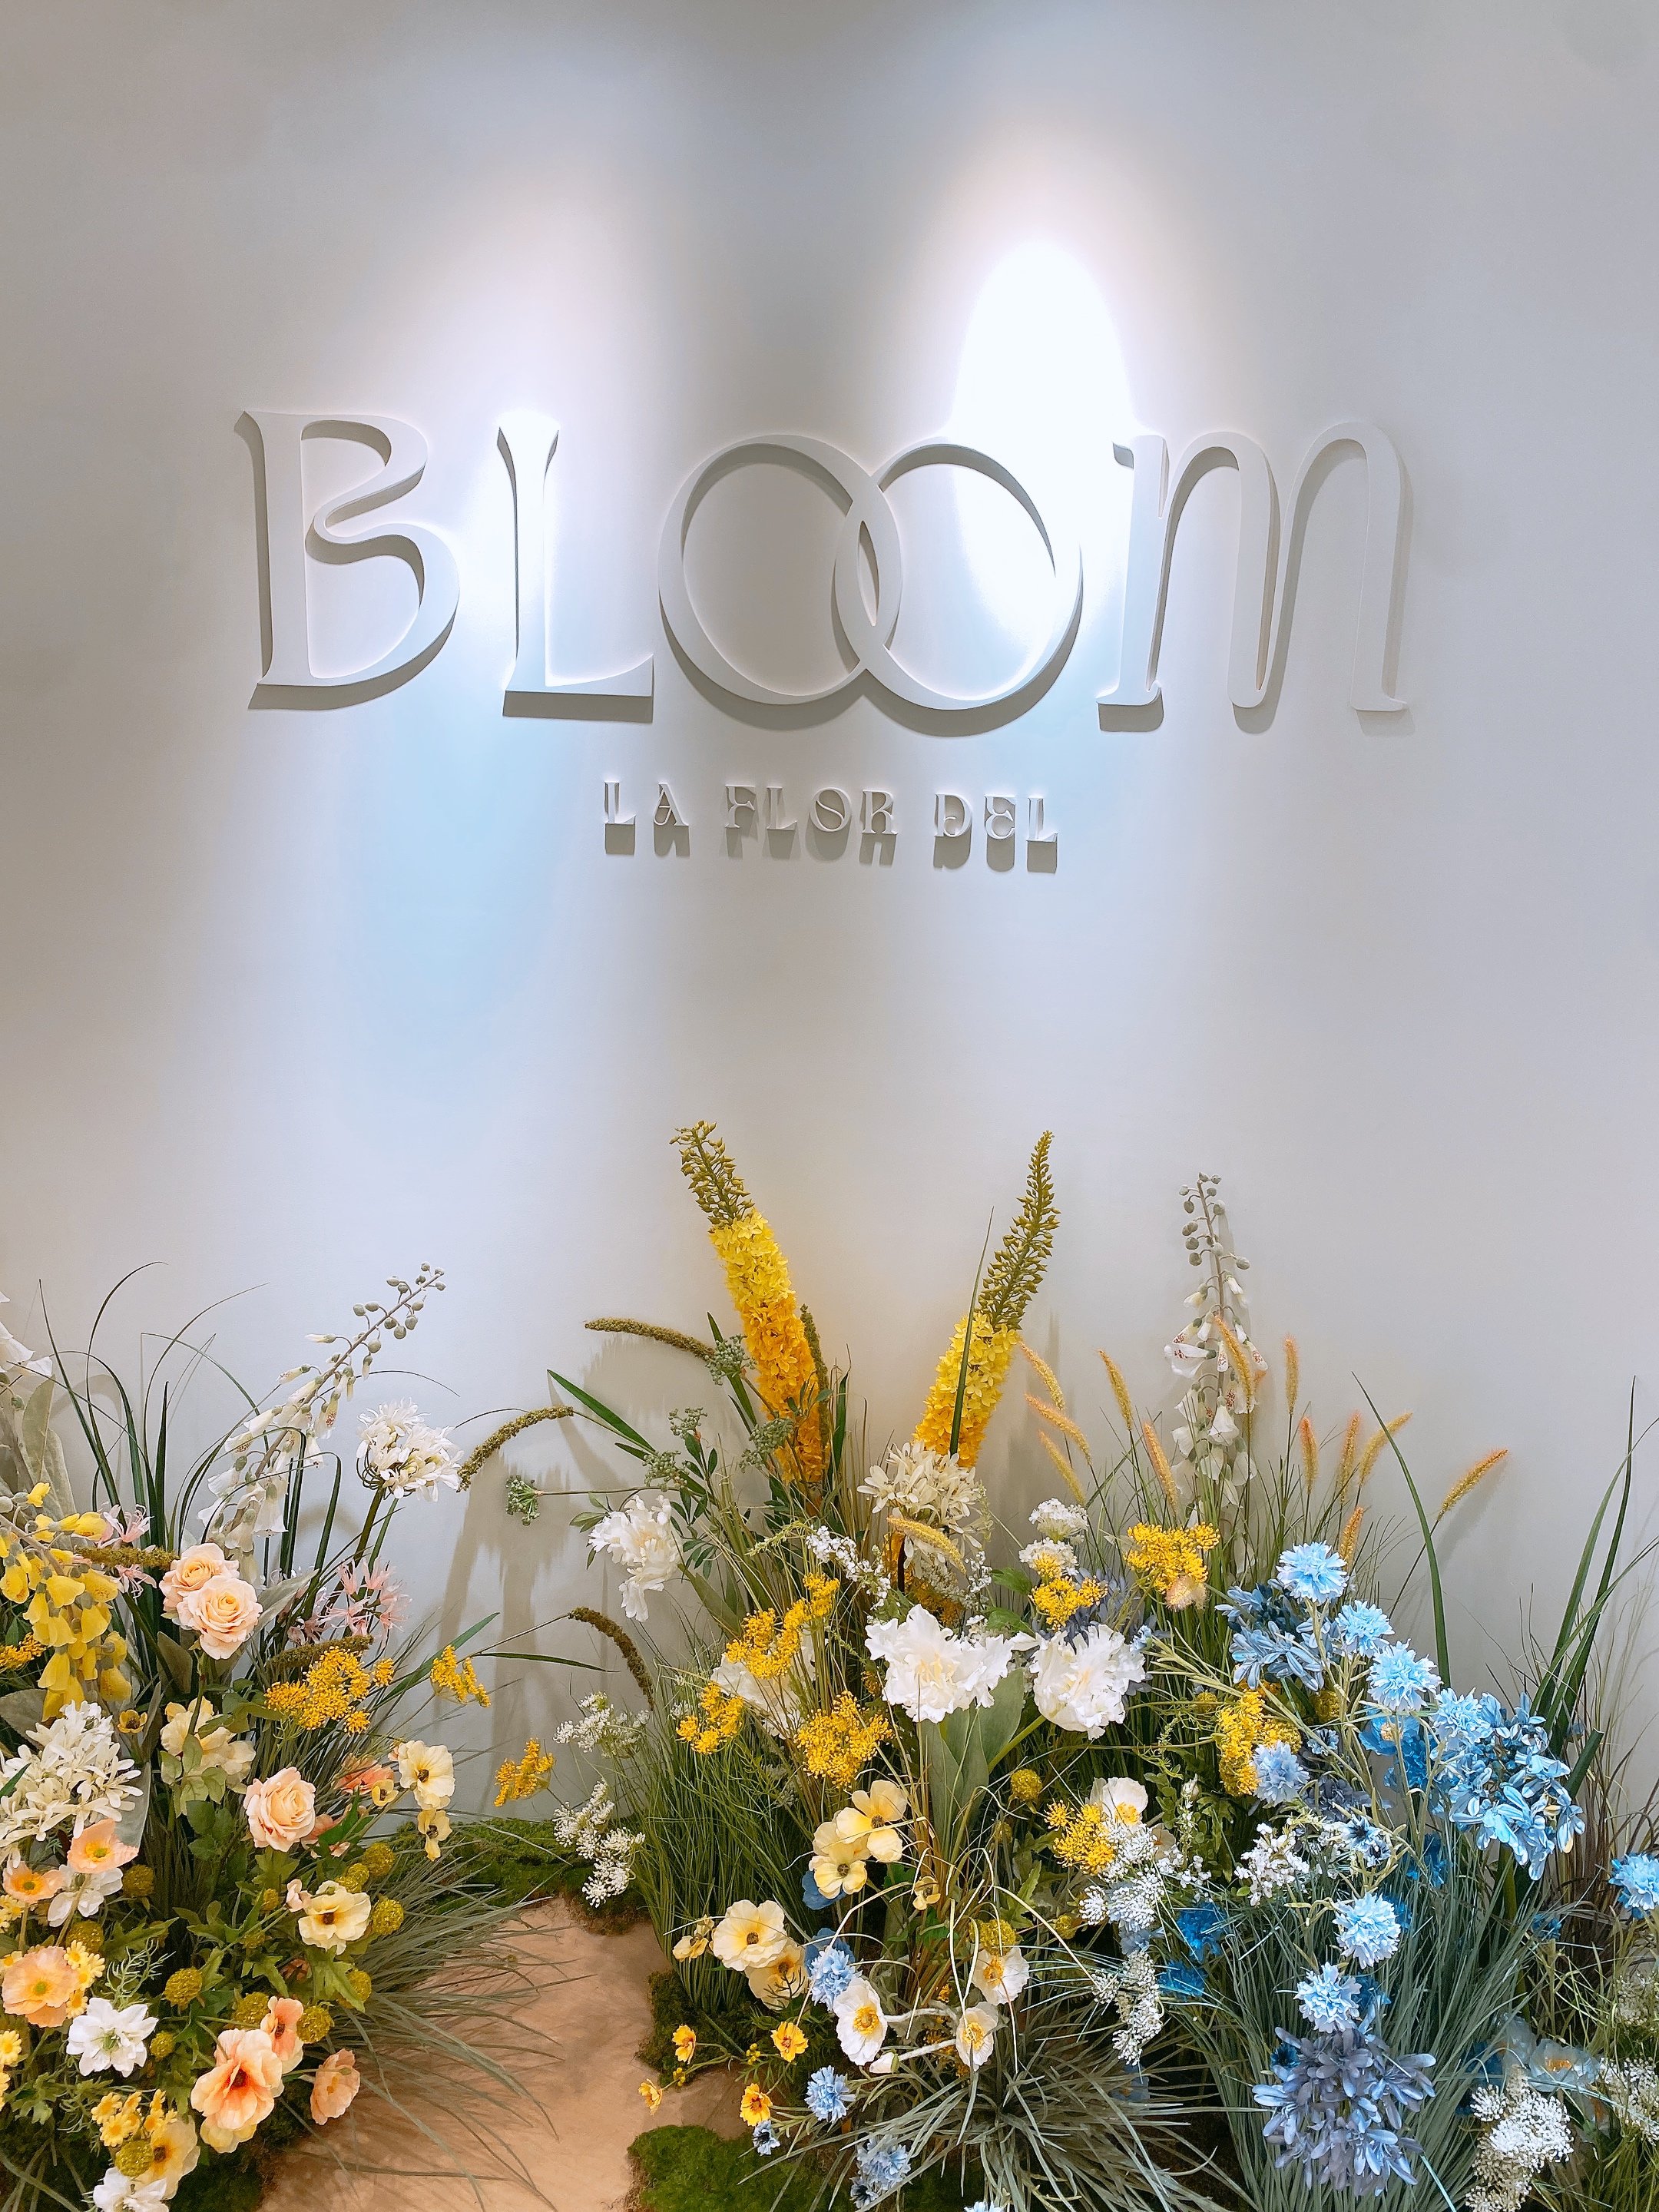 分享-Bloom花神精品法式喜餅試吃及下訂-婚禮廠商評價